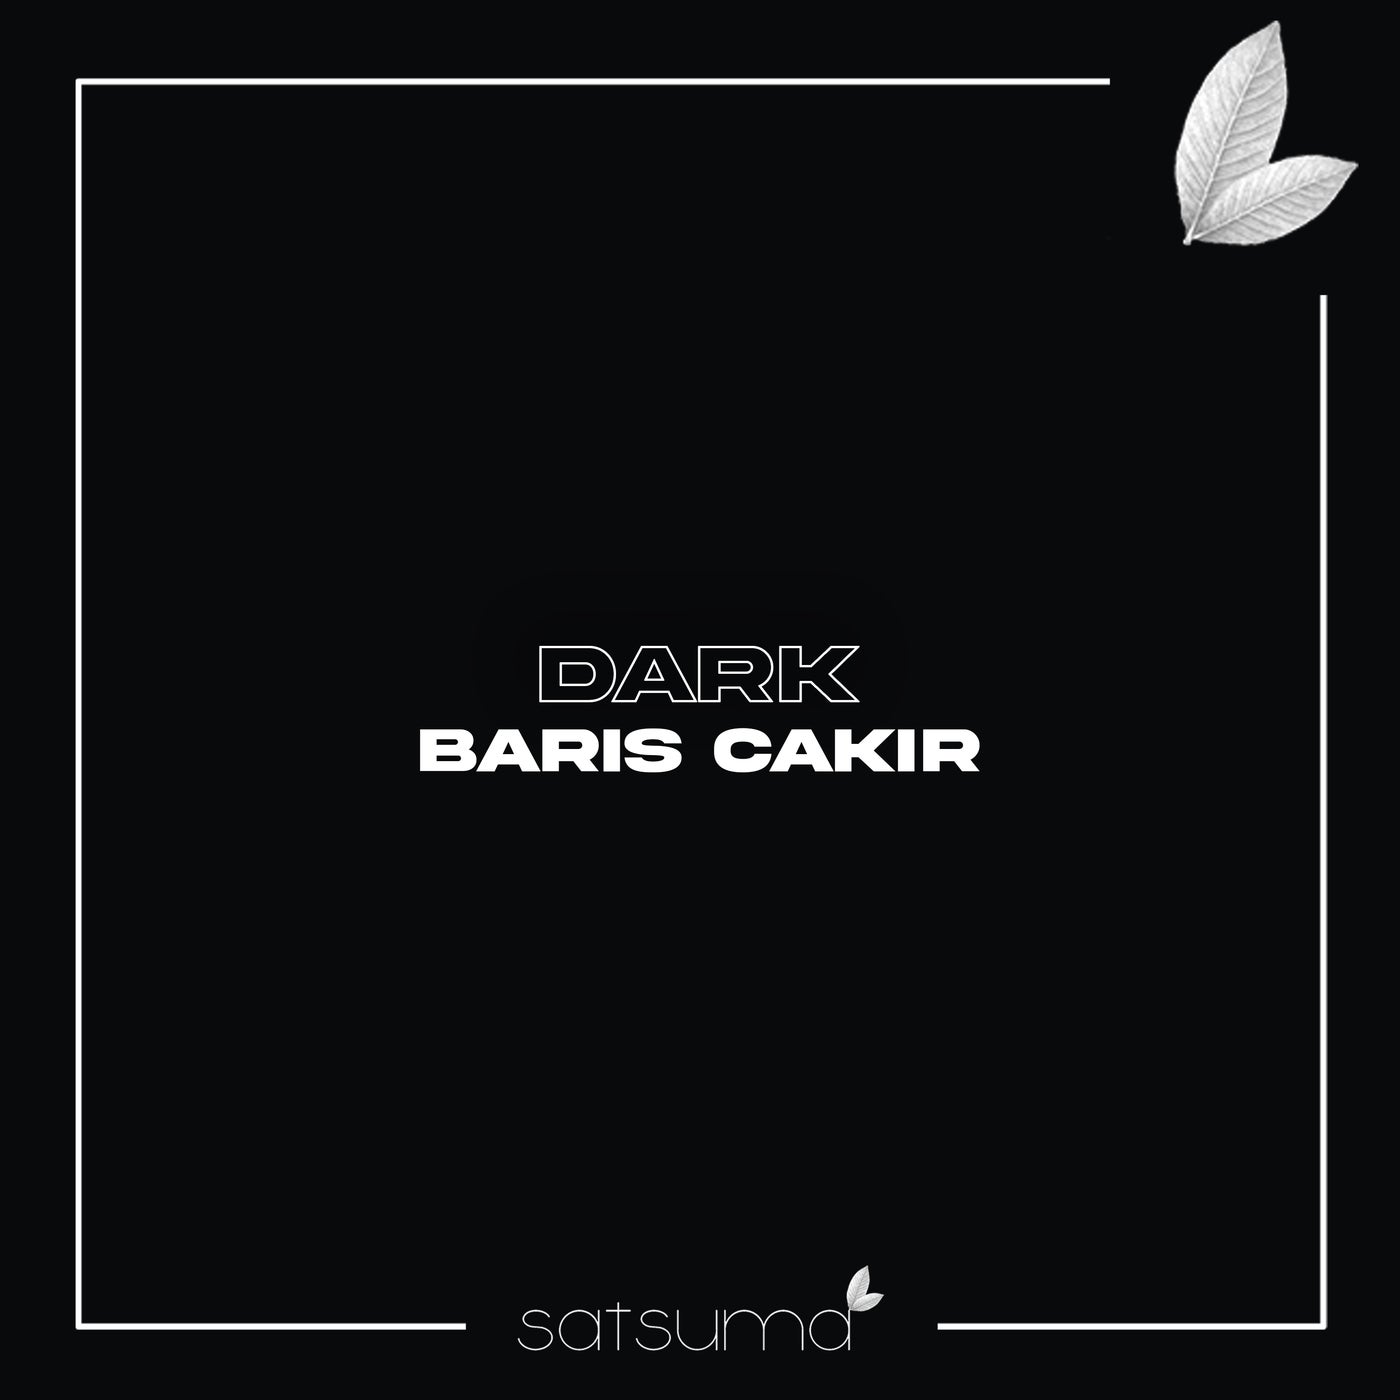 Barış Çakır - Dark (Original Mix)